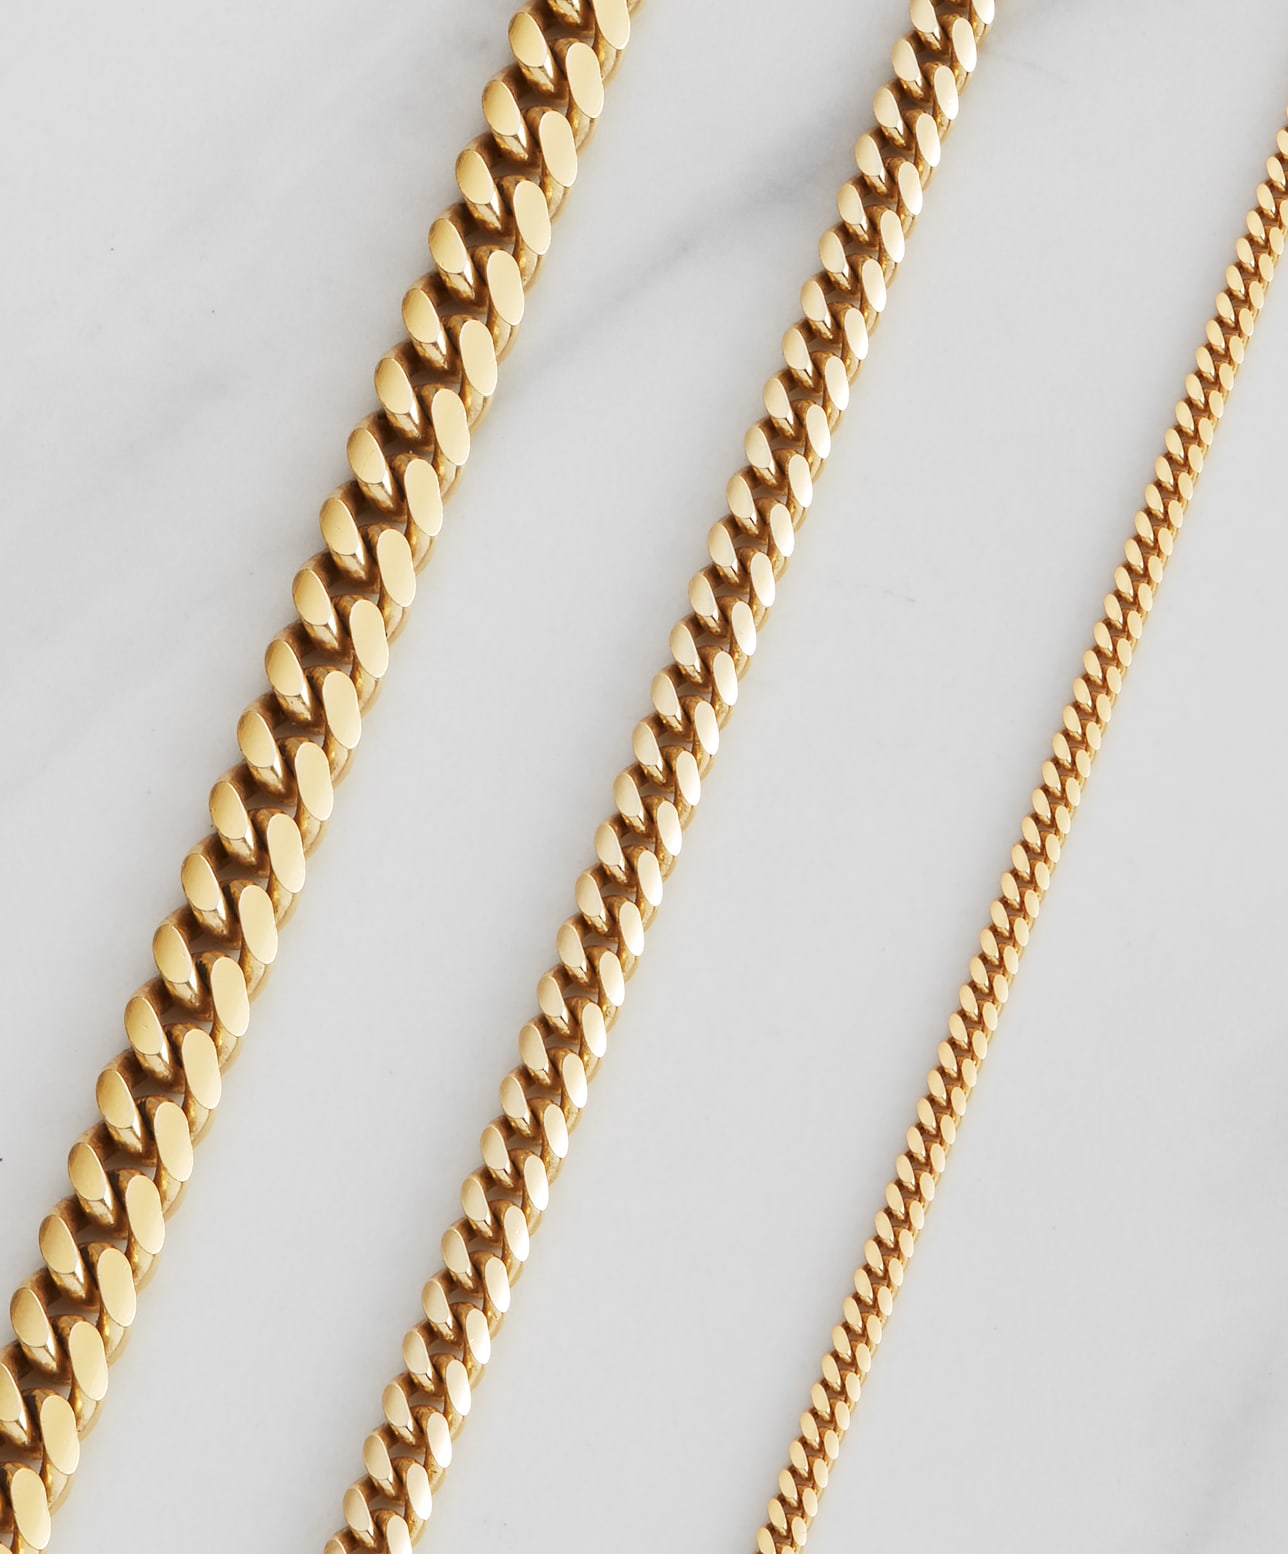 Image Cuban Link Bracelet Stack - Gold - Higher Quality Standards